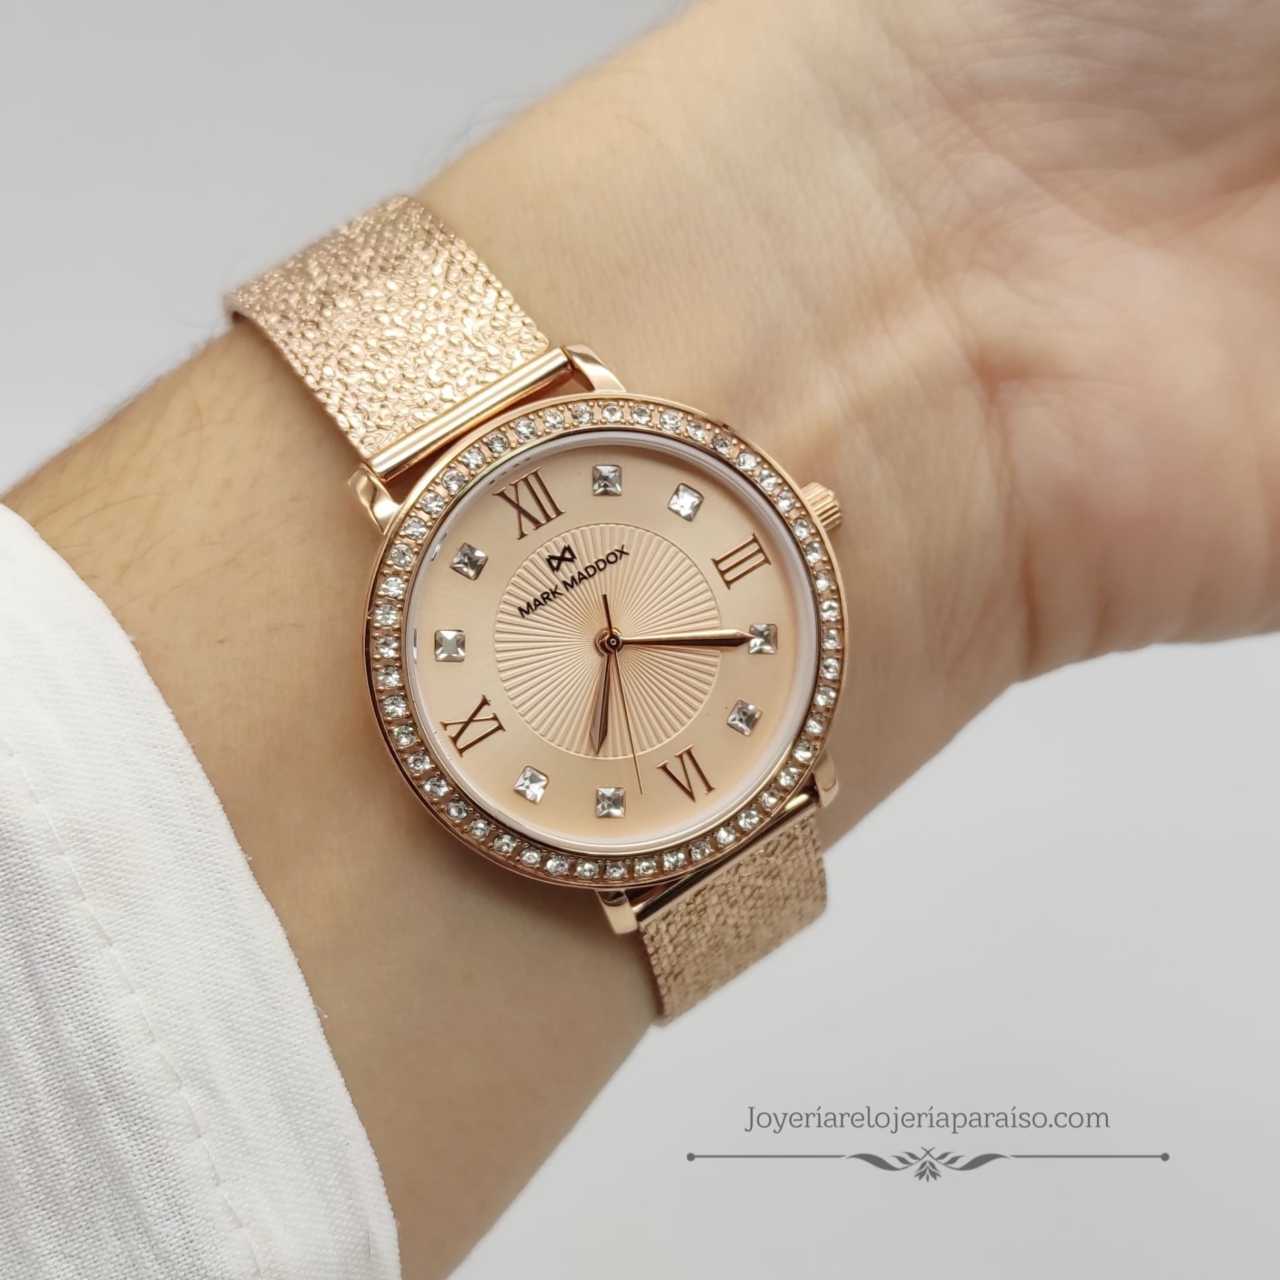 Reloj Mark Maddox Oro Rosado Mujer, con Circonitas y Correa Milanesa  Original » Joyería Relojería Paraíso